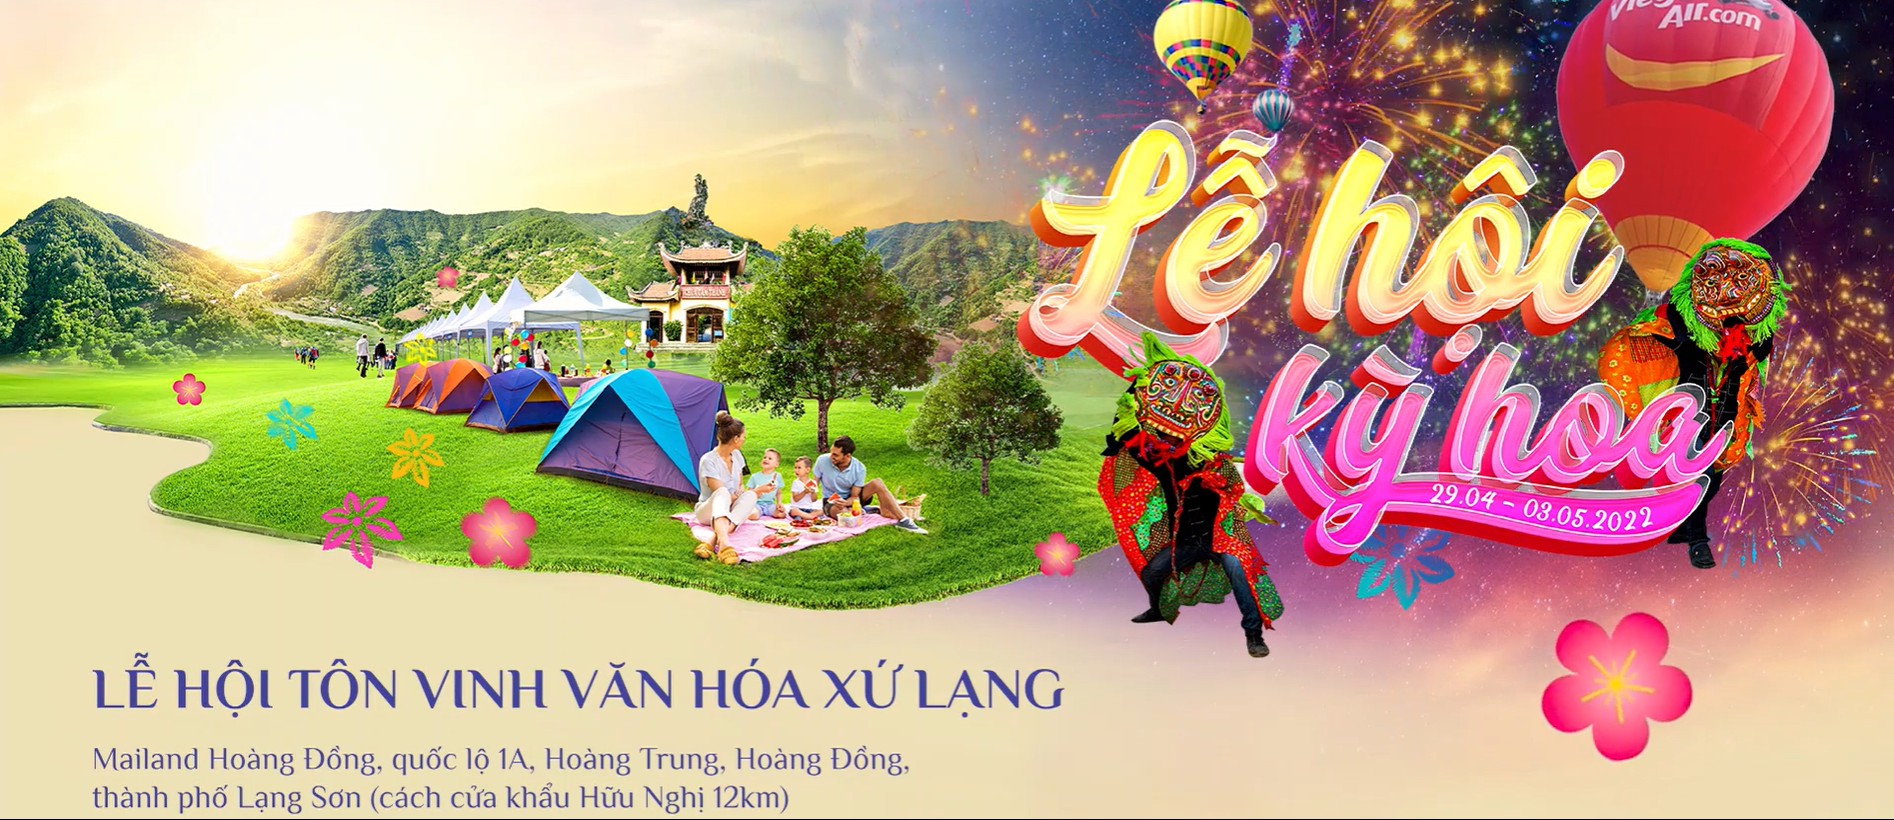 Sắp diễn ra "Lễ hội Kỳ Hoa - Lạng Sơn 2022"